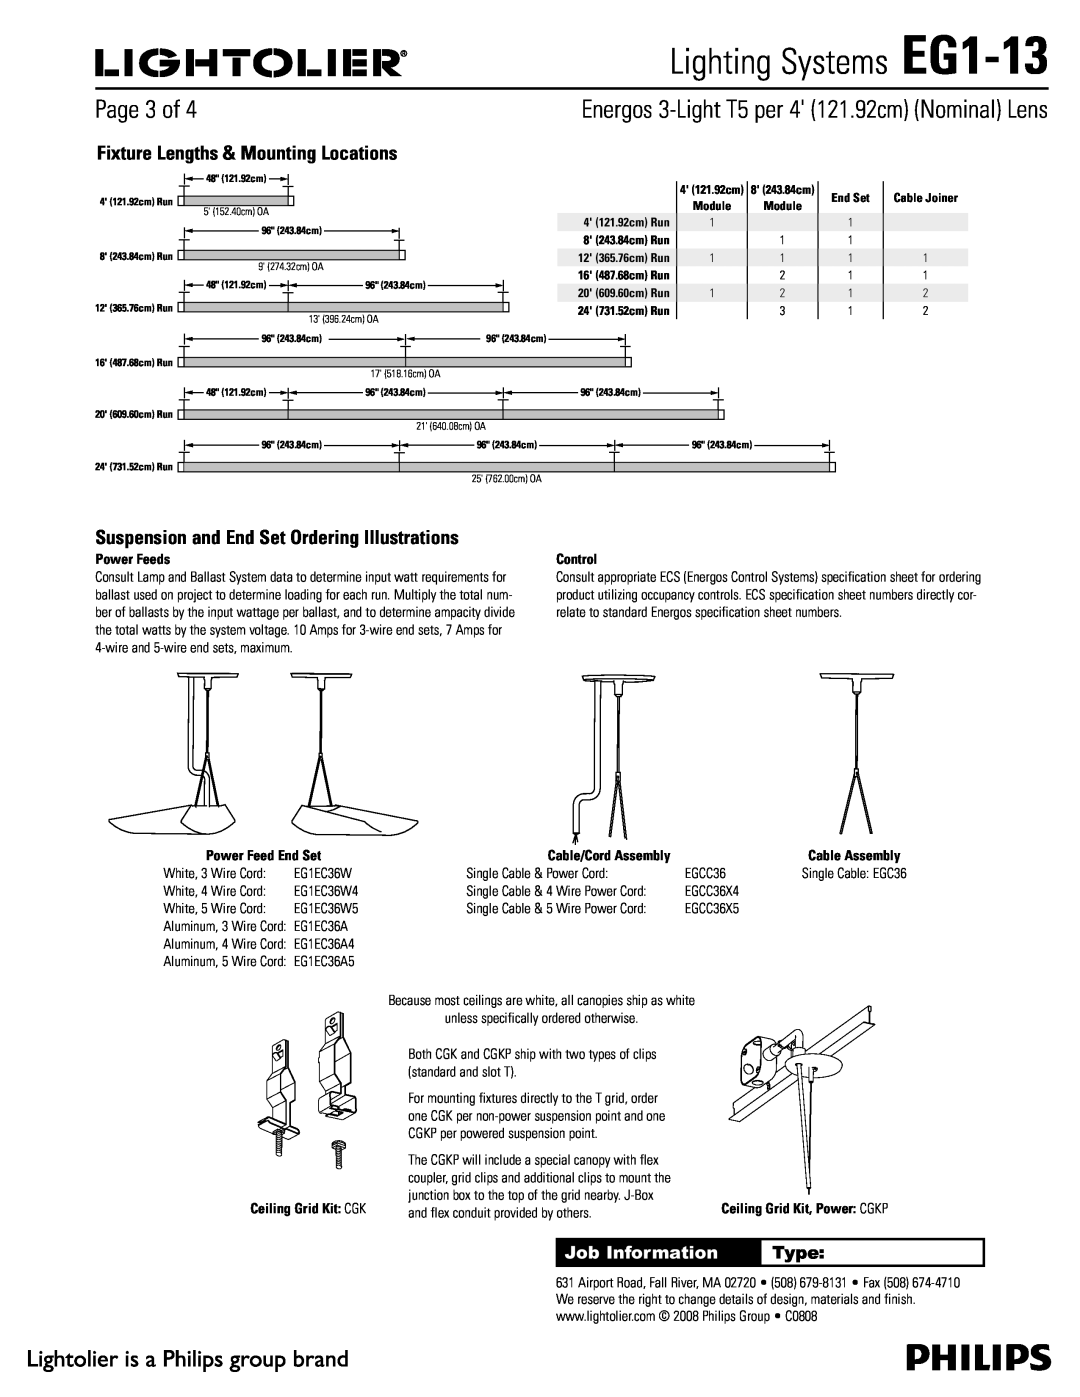 Lightolier Lighting Systems EG1-13, 1BHFPG, Job Information, Type, Ceiling Grid Kit $, 4 121.92cm Run, End Set 